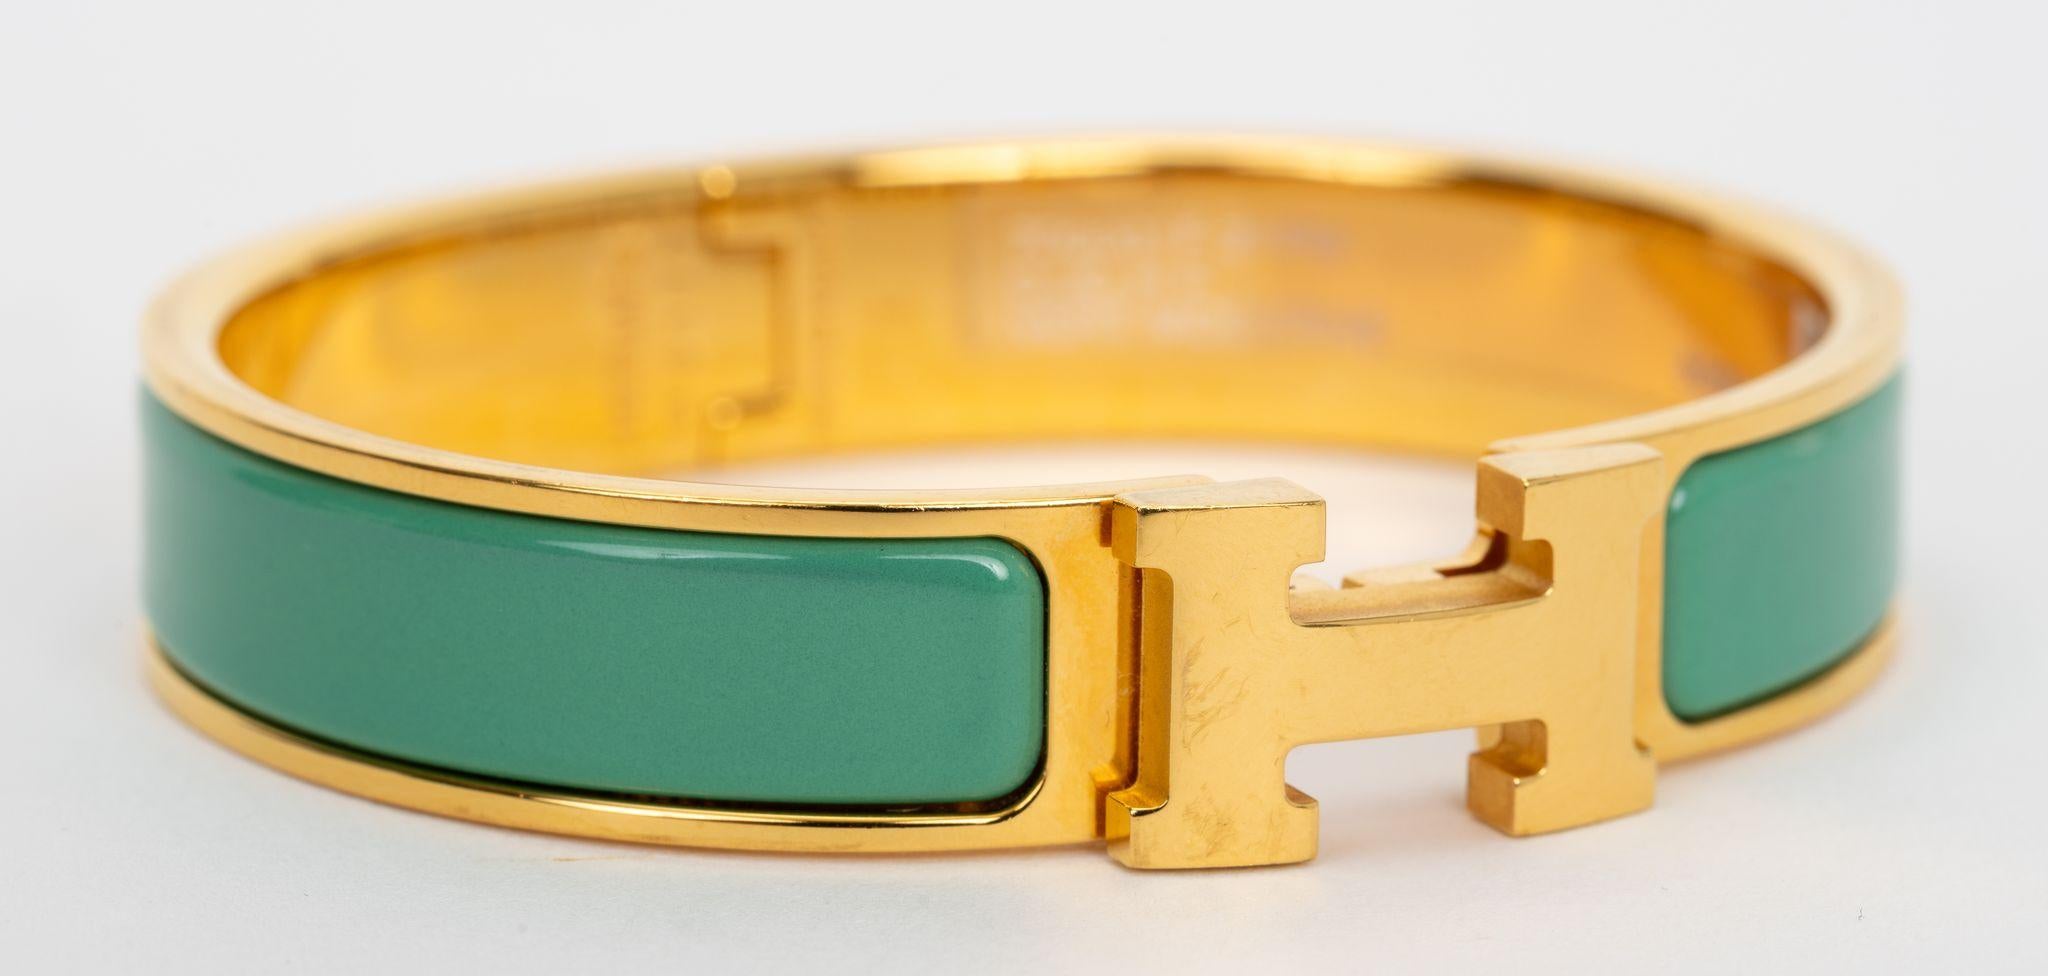 Die neue Hermes Clic clac H, schmales Armband, in vert modernem Emaille mit vergoldeten Beschlägen.
Größe PM, ungetragener Neuzustand, wird mit Samtbeutel geliefert.